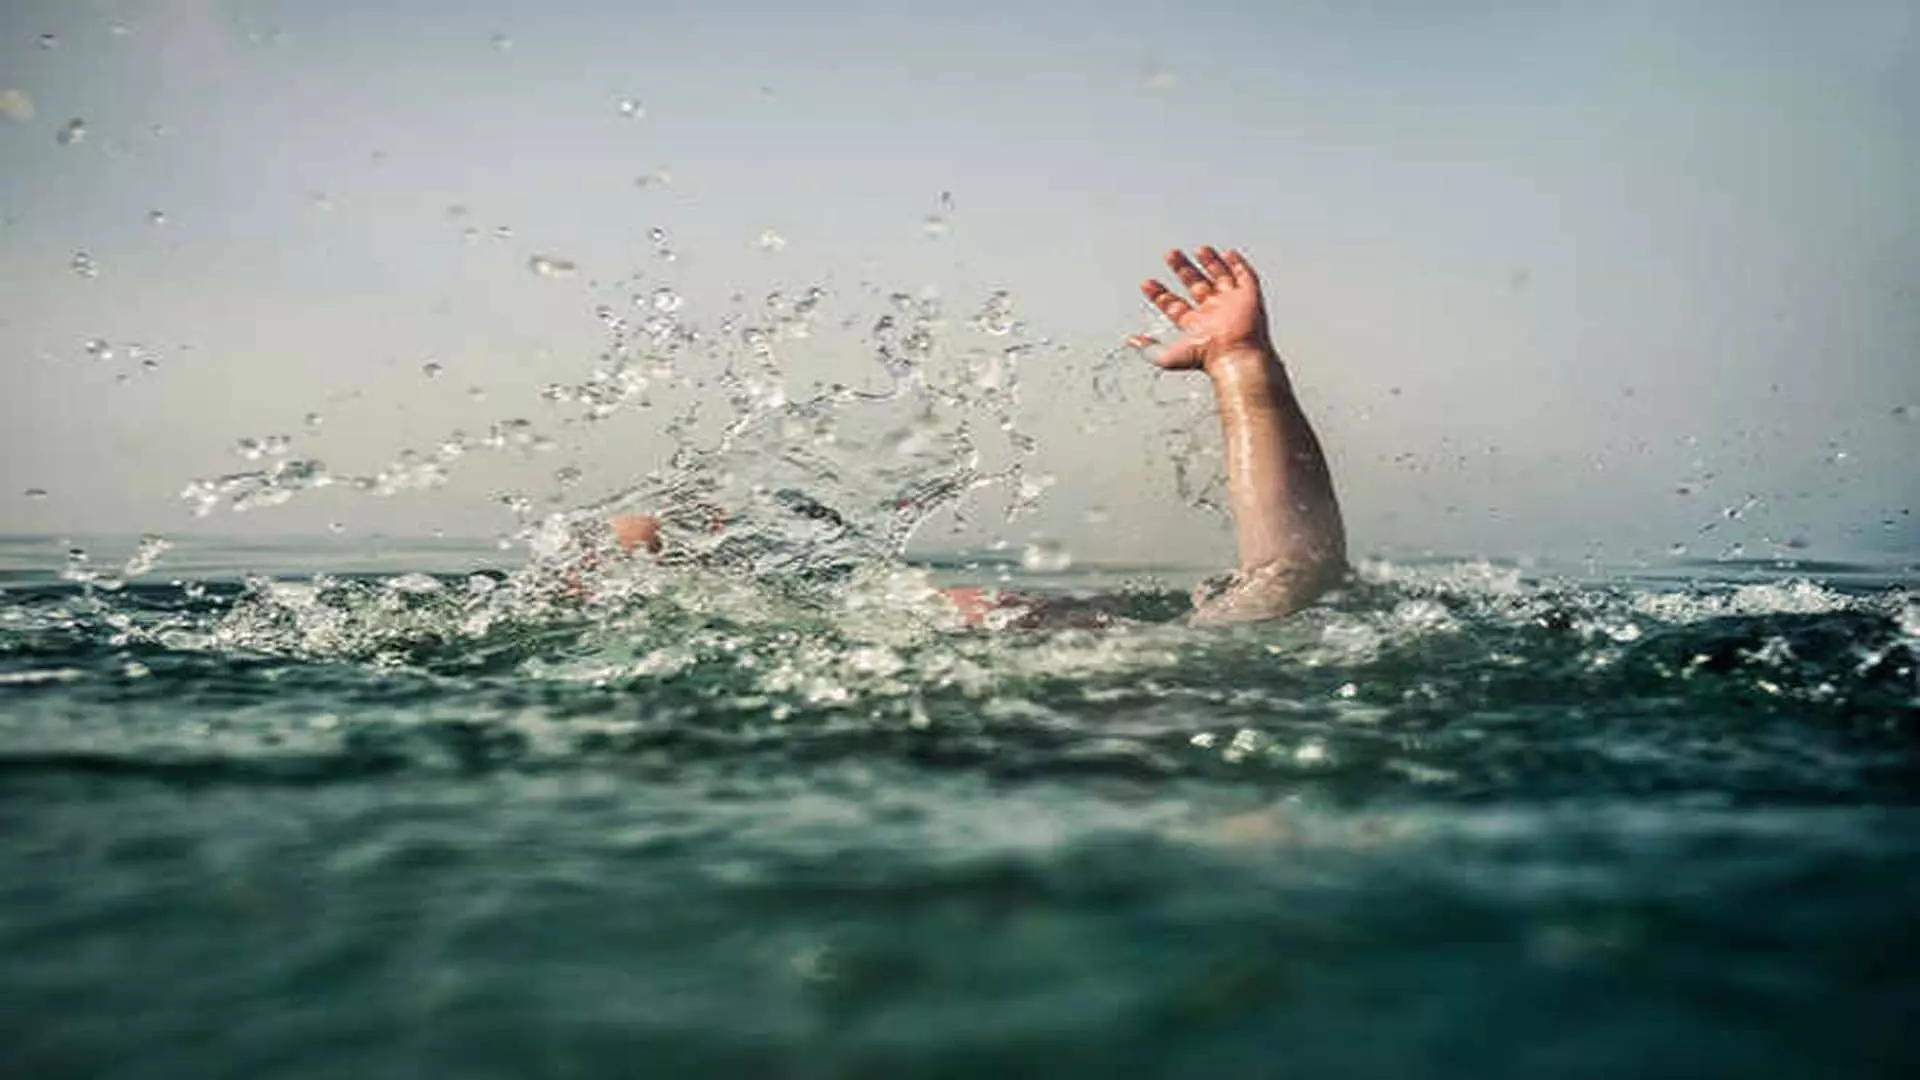 Lonavala भुशी बांध के पास झरने में 5 लोगों के डूबने की आशंका